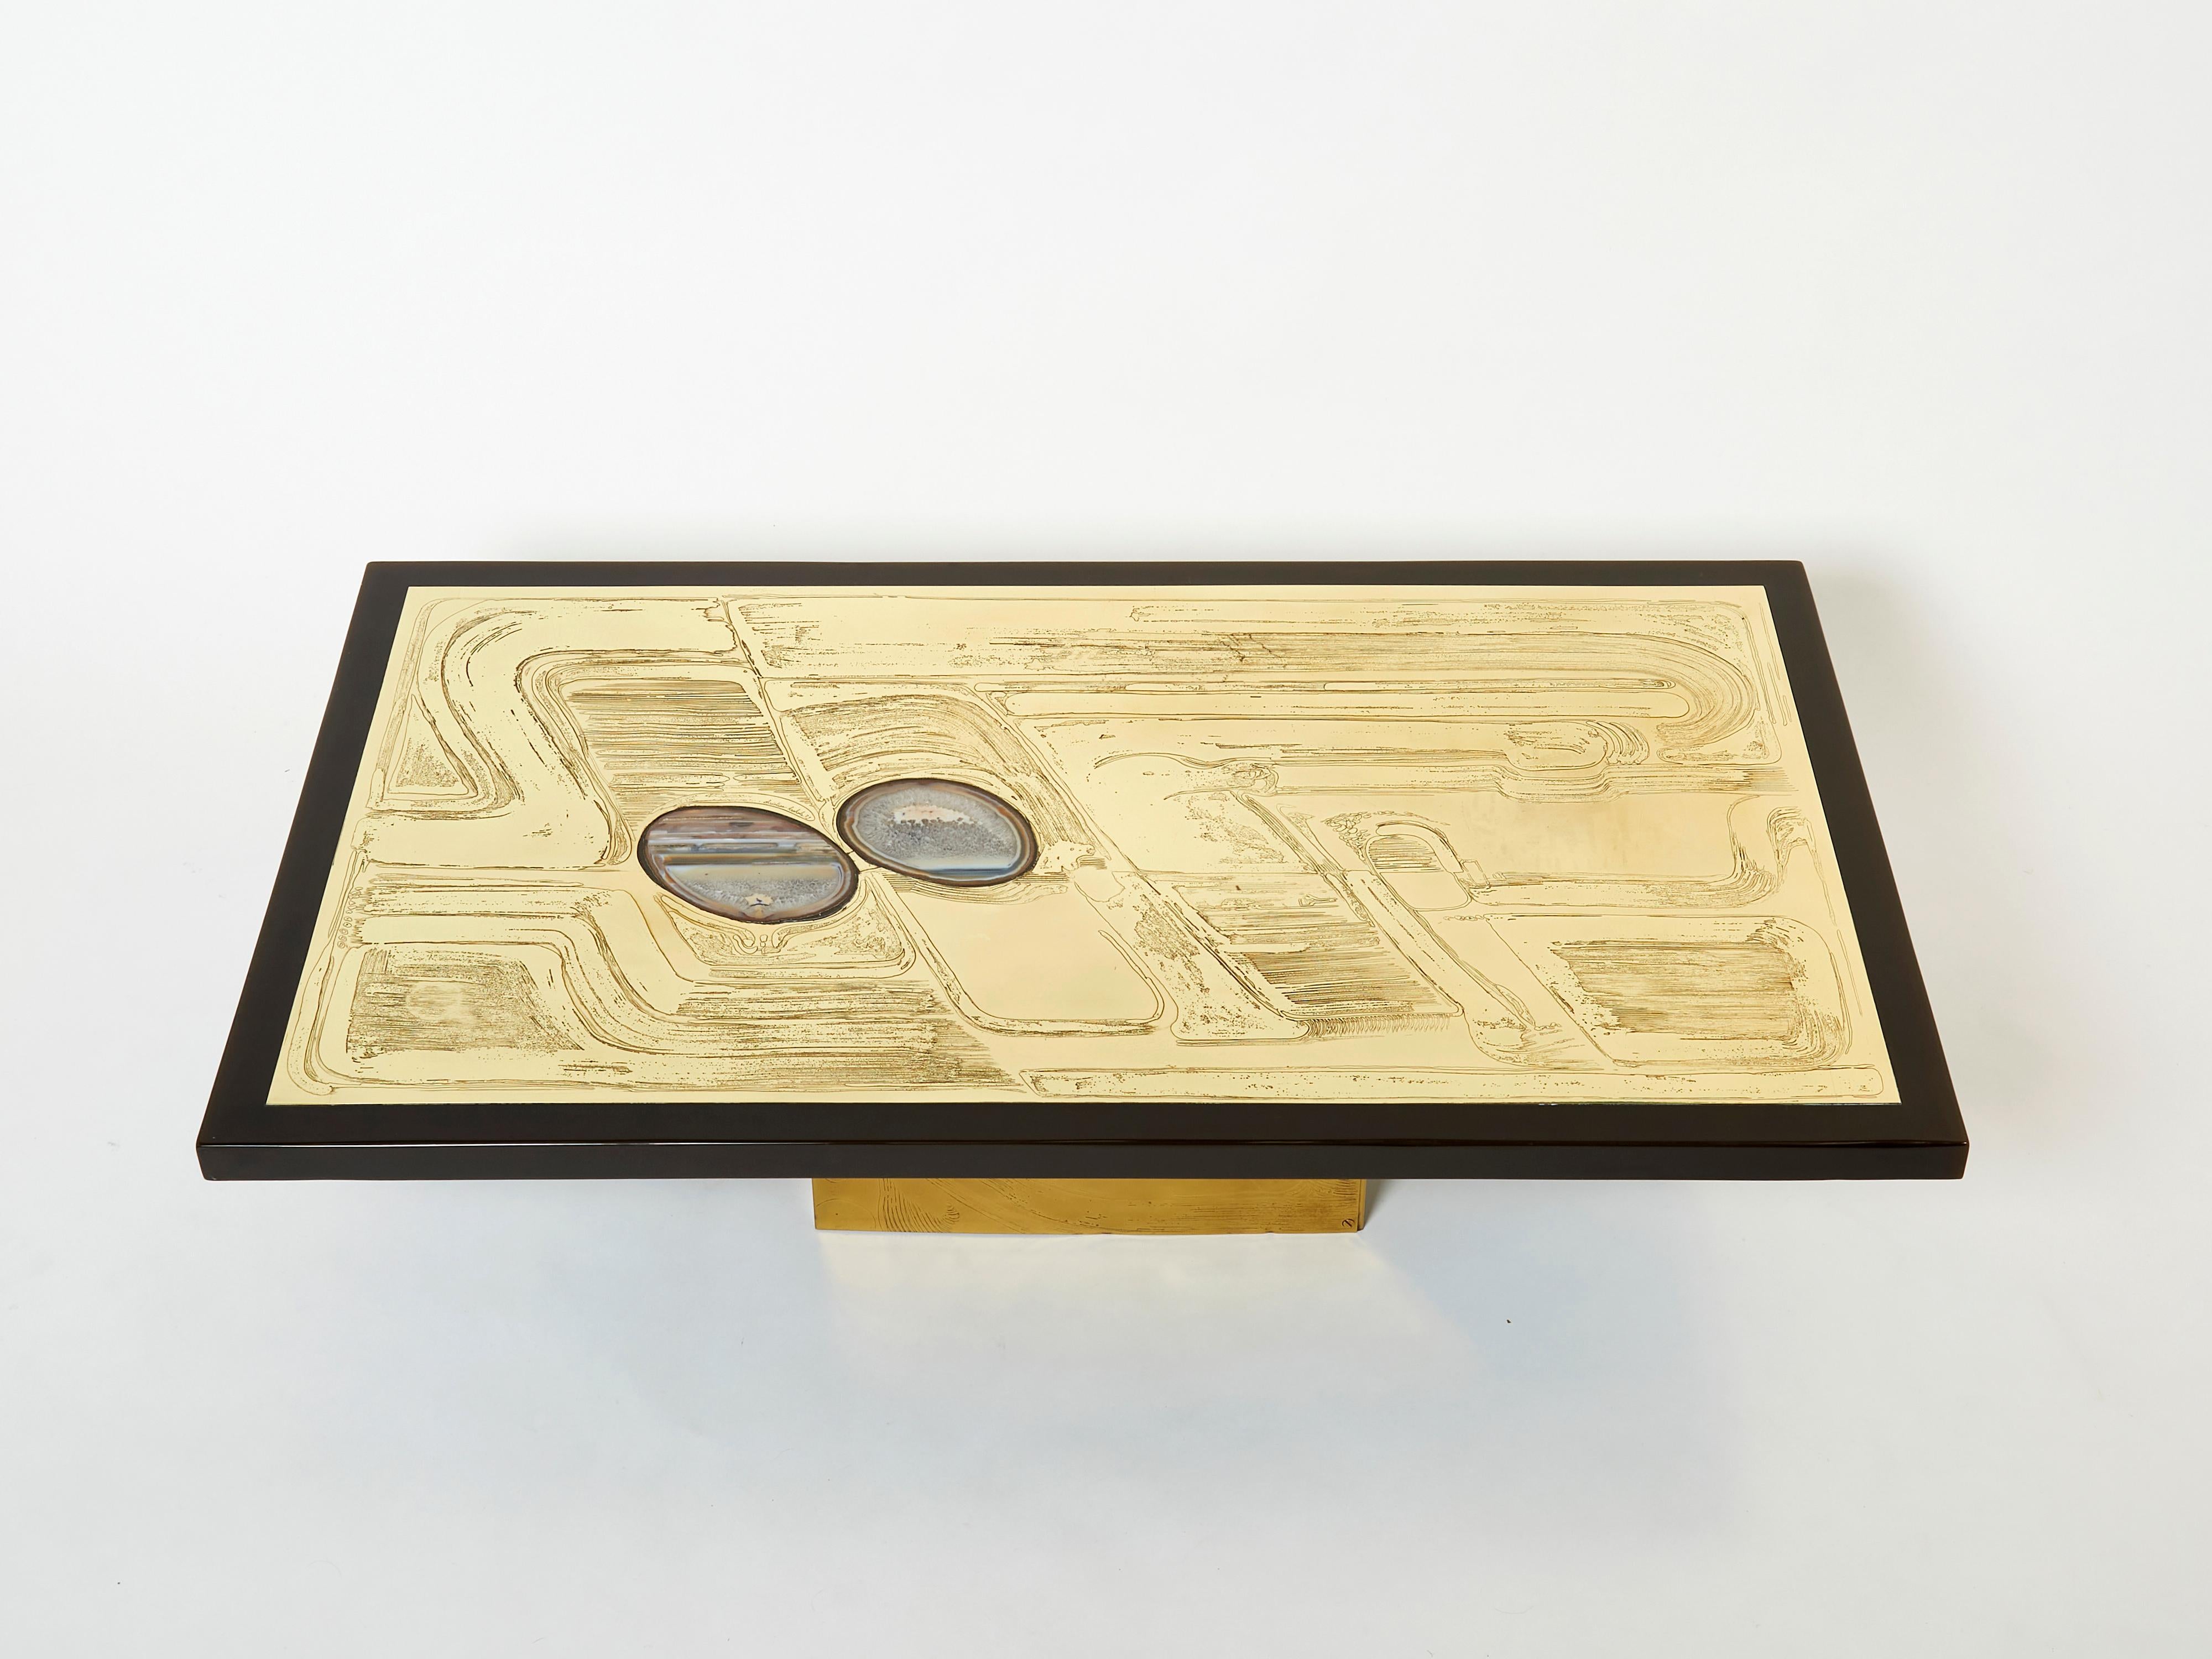 Il s'agit d'une belle table basse belge signée par Christian Krekels en 1979. La table présente un magnifique plateau décoratif en laiton gravé, avec deux pierres d'agate incrustées, encadré par un insert en résine brun foncé. Il est posé sur un